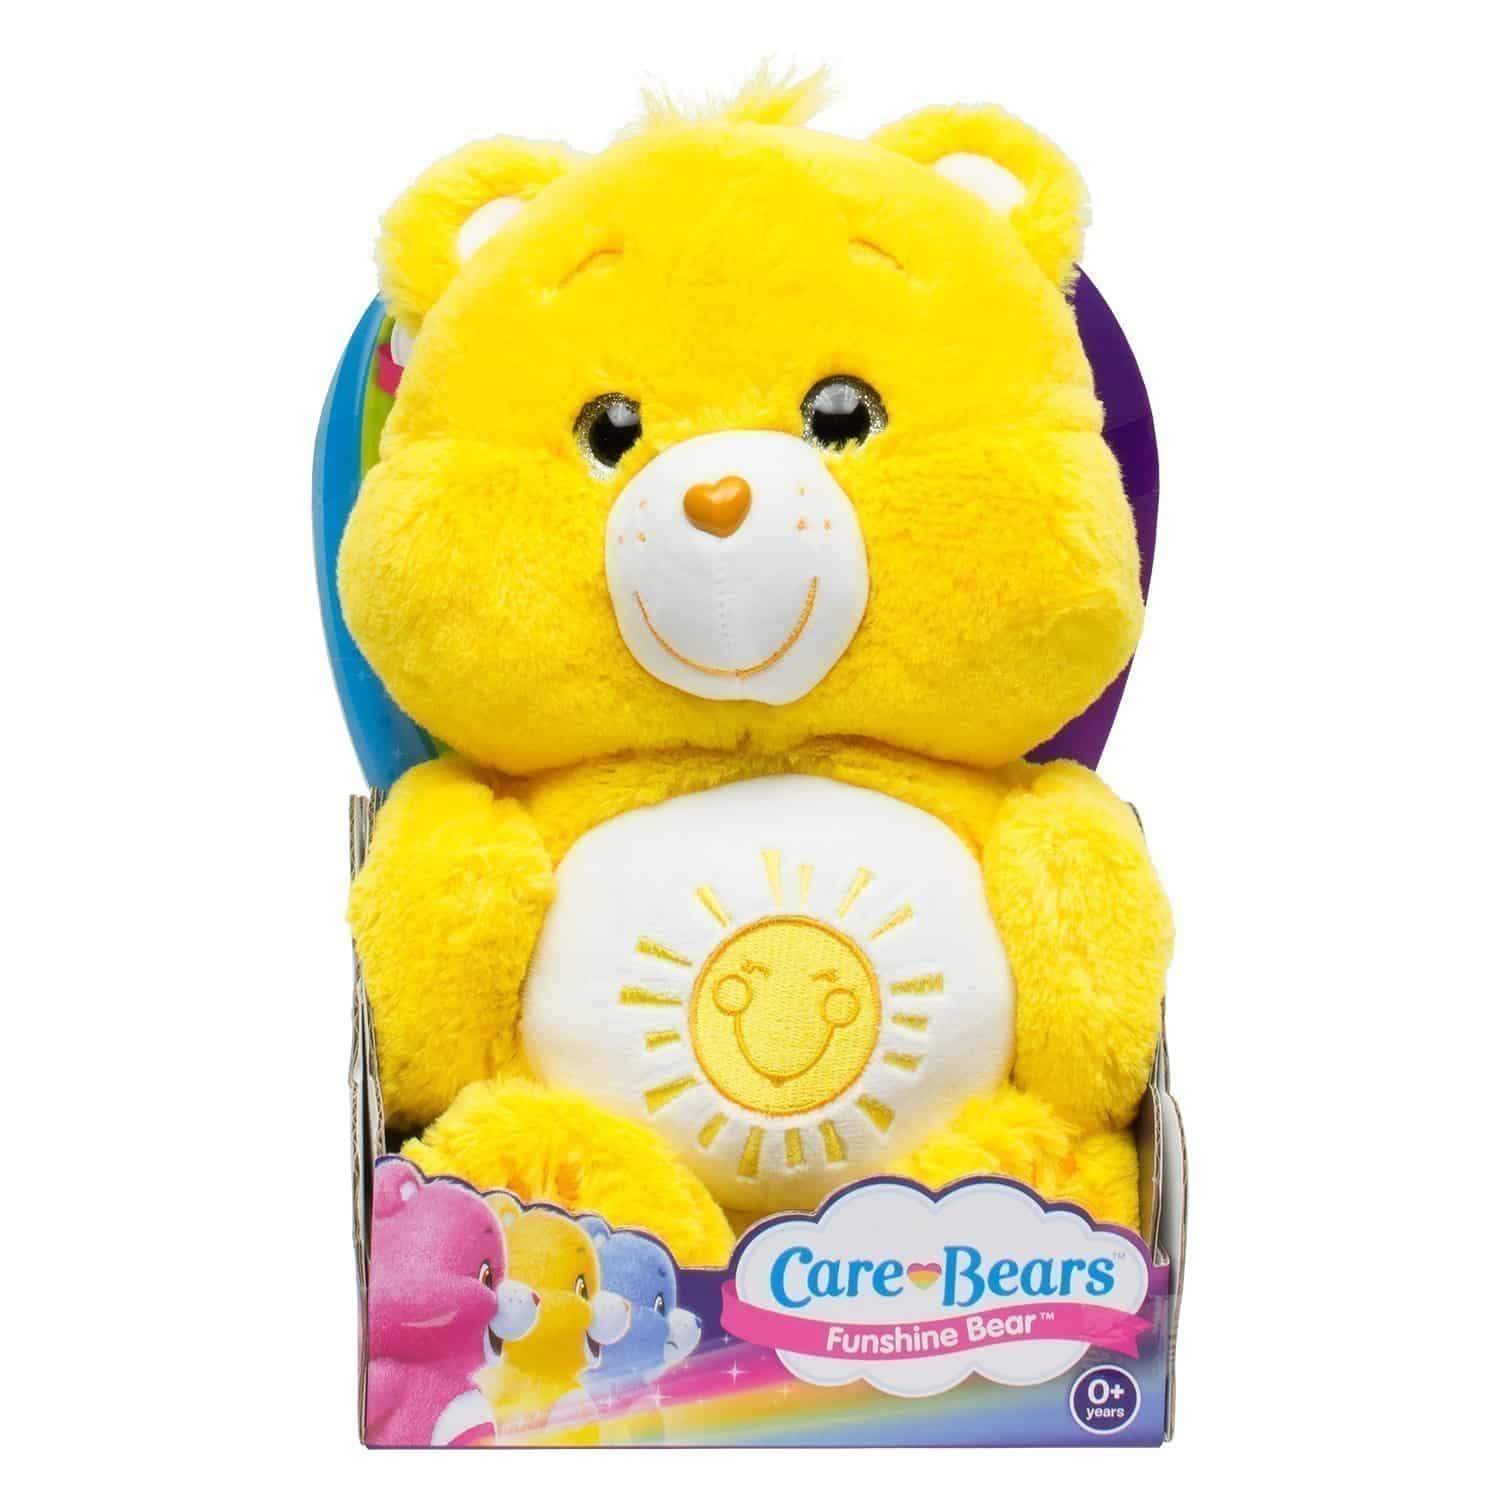 Care Bears - Classic Plush Funshine Bear